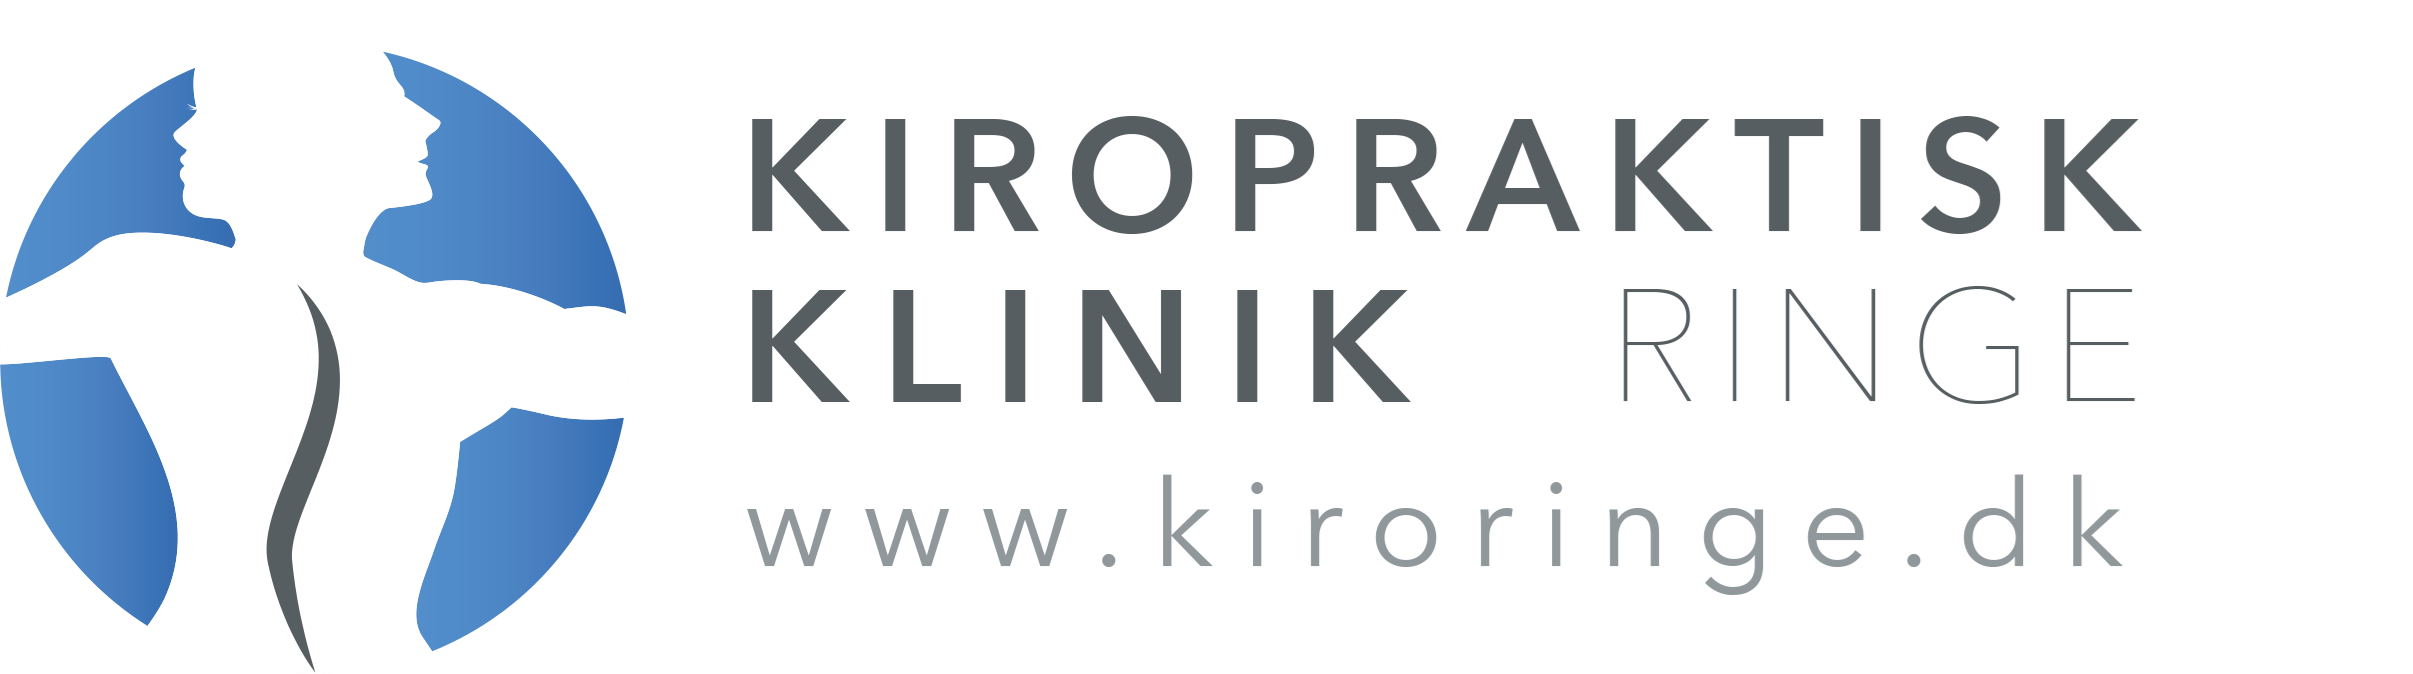 logo-kiroringe